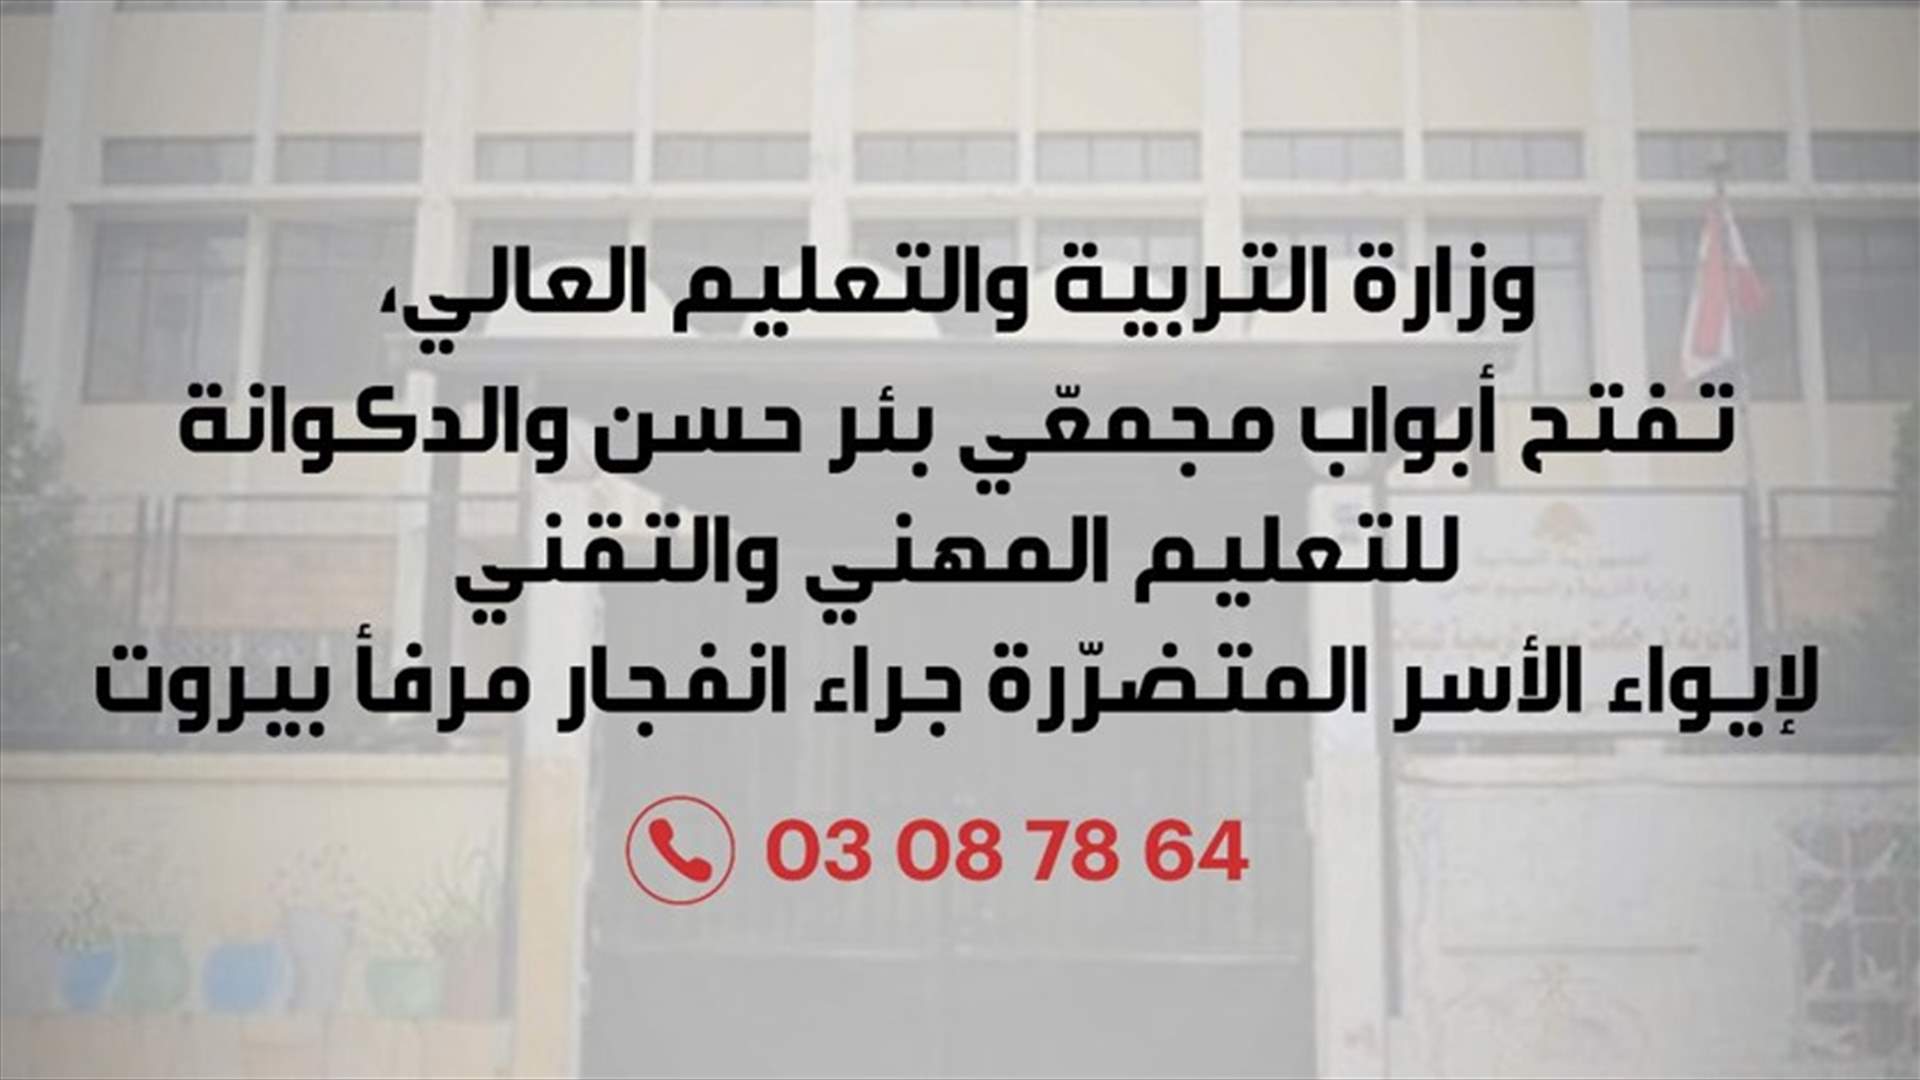 وزارة التربية تفتح أبواب مجمعّي بئر حسن والدكوانة لإيواء الأسر المتضرّرة